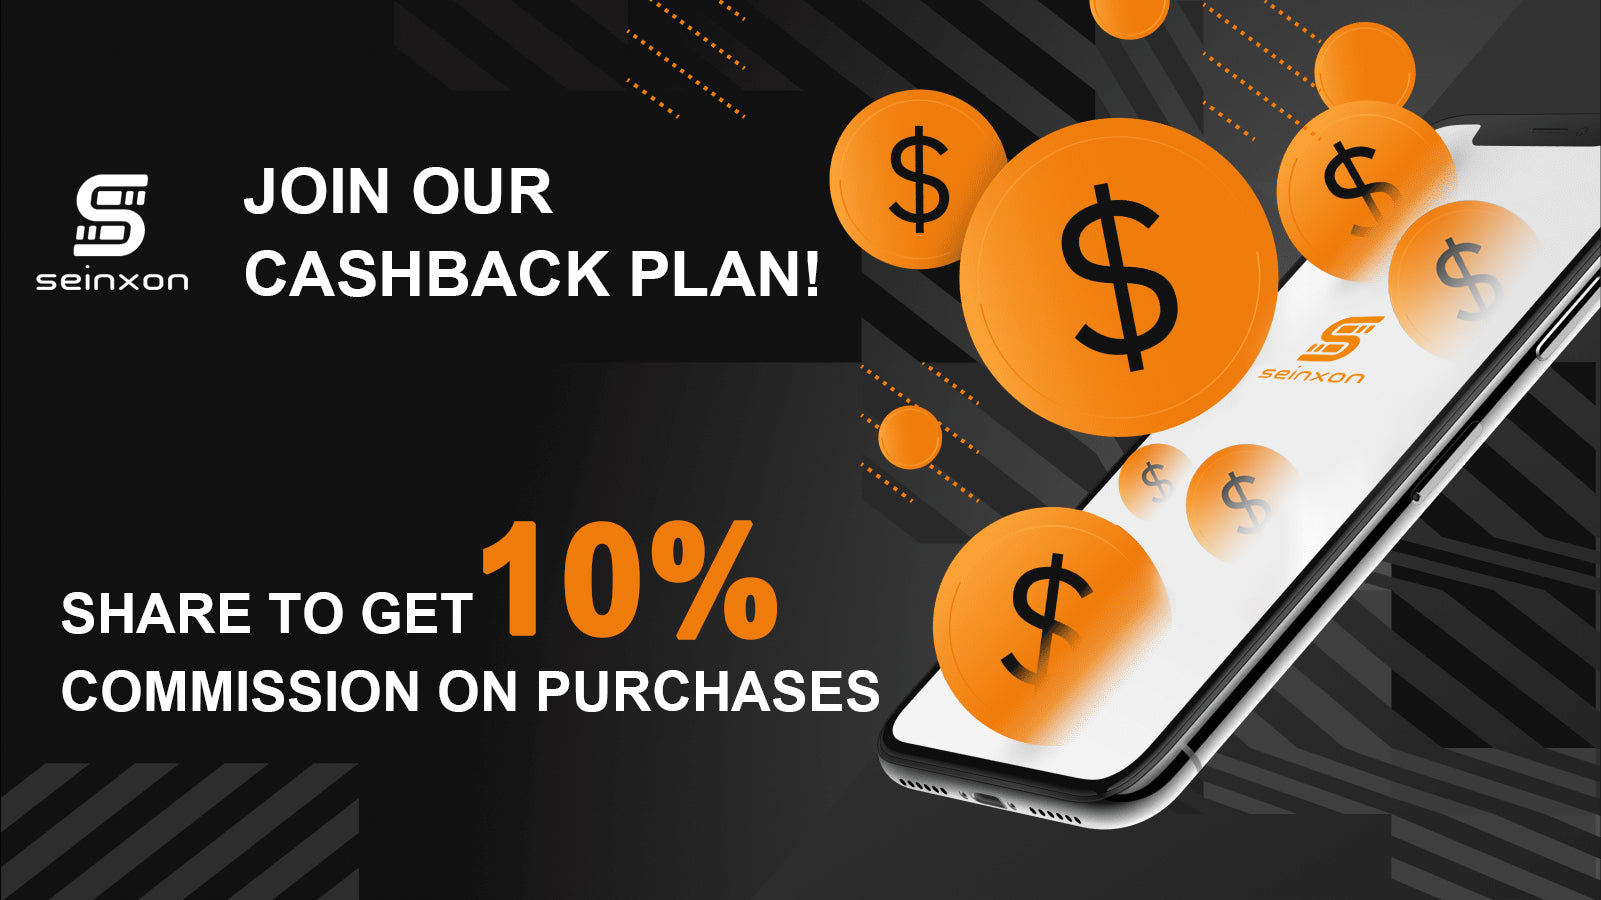 Share Seinxon Item Finder To Get 10% Cashback